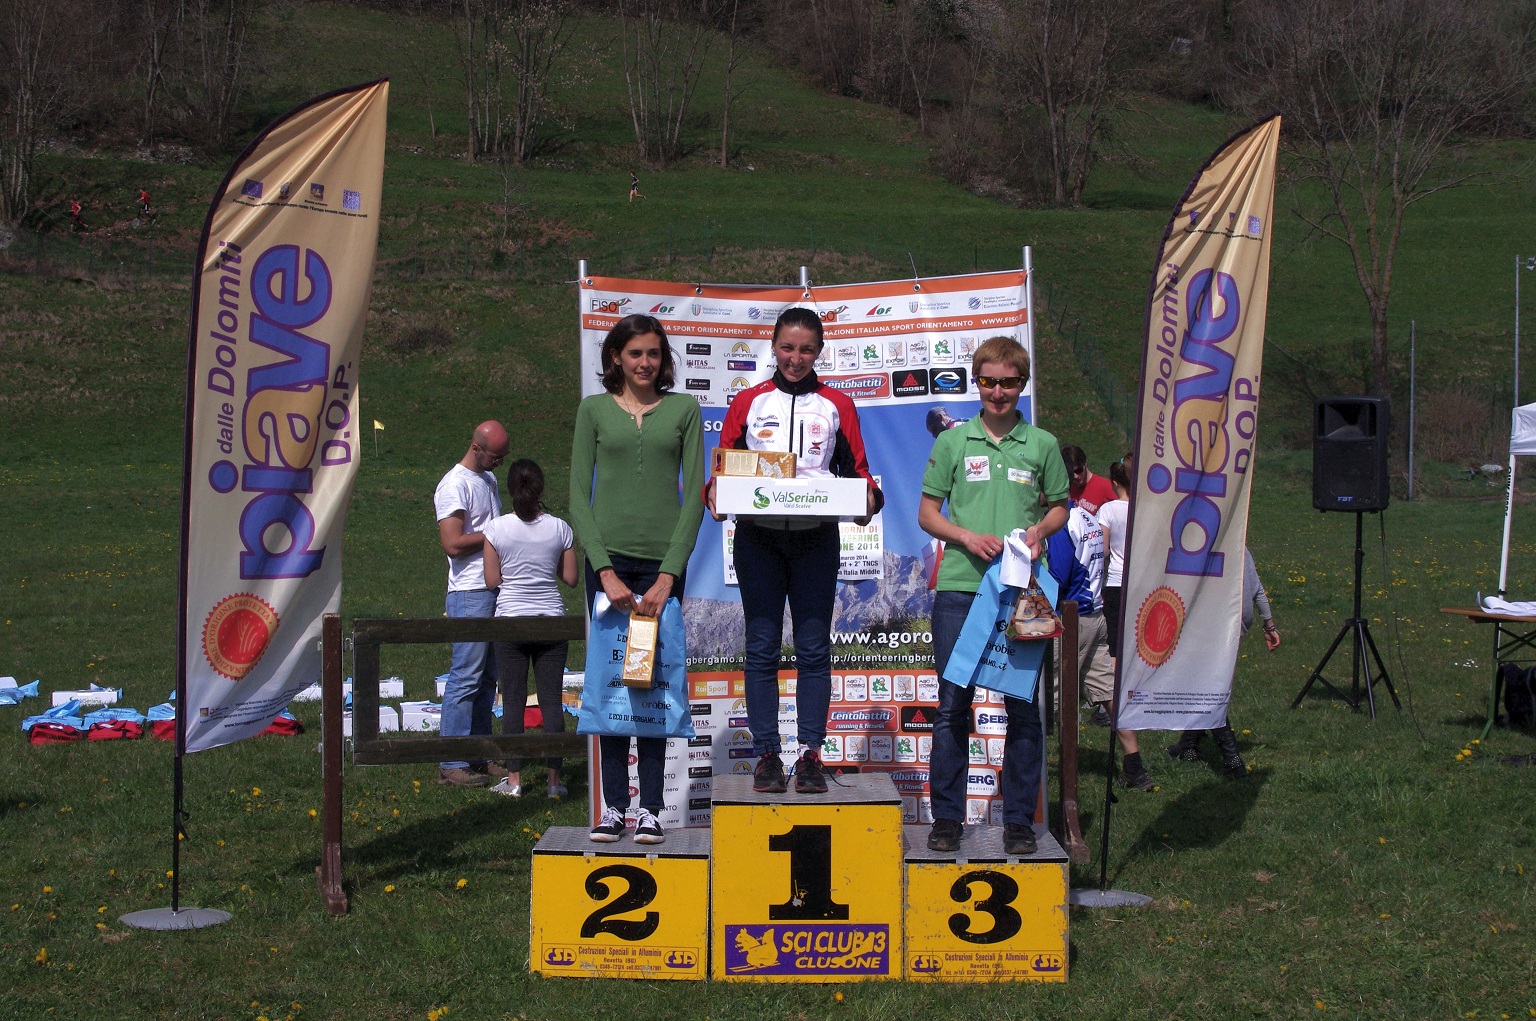 La prima gara della stagione di Orienteering è stata svolta a Clusone (BG) il 30 marzo. 